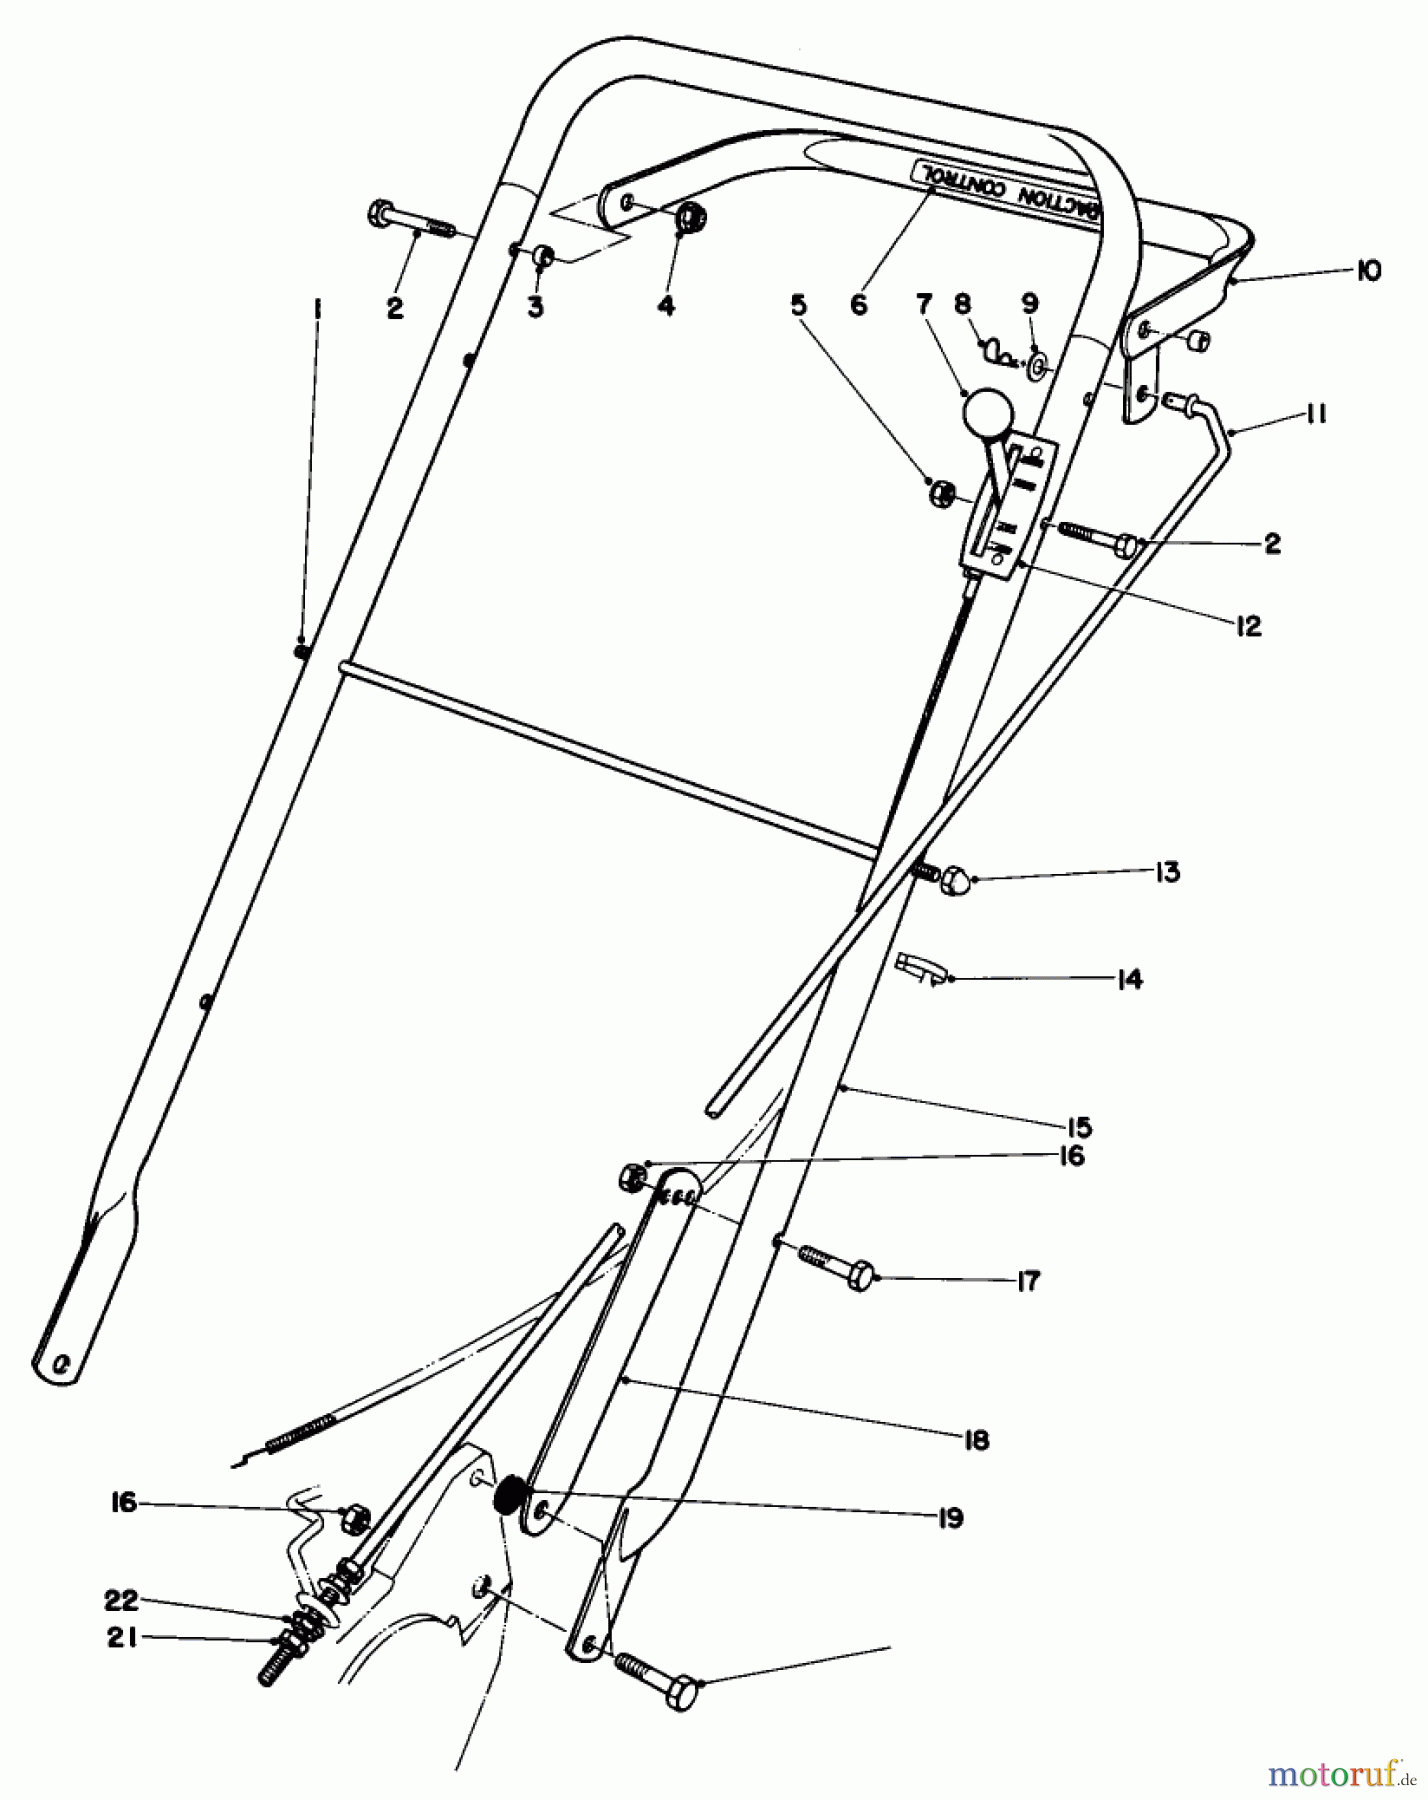  Toro Neu Mowers, Walk-Behind Seite 2 22020 - Toro Lawnmower, 1983 (3000001-3999999) HANDLE ASSEMBLY (MODEL 22020)